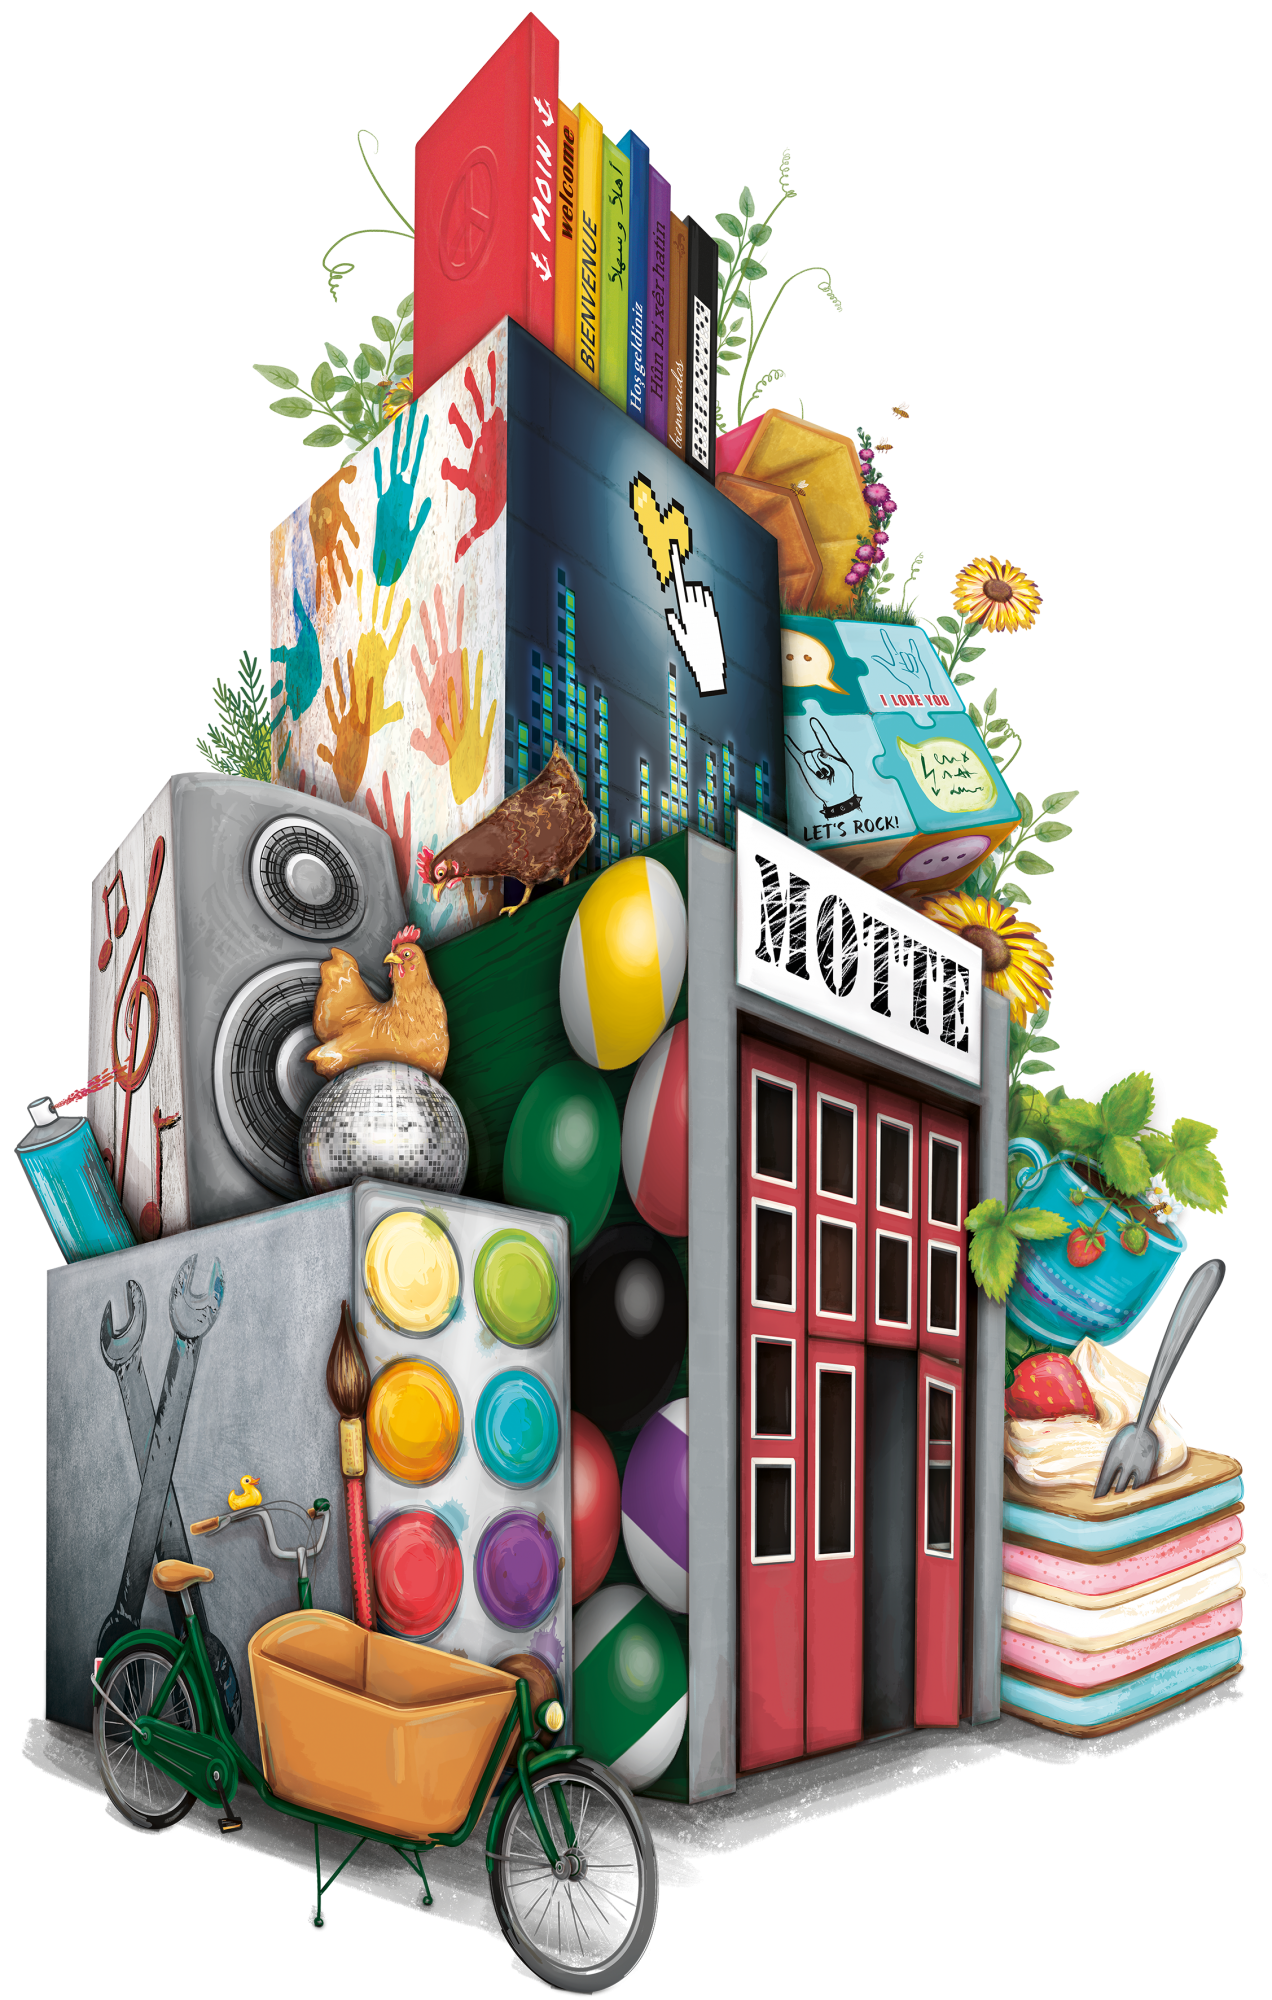 Illustration für das MOTTE-Jubiläum, bestehend aus diversen Objekten und Symbolen, die mit der MOTTE verbunden werden. Zum Beispiel Hühner, Werkzeuge, Gebärdensprache, Blumen und Bücher.